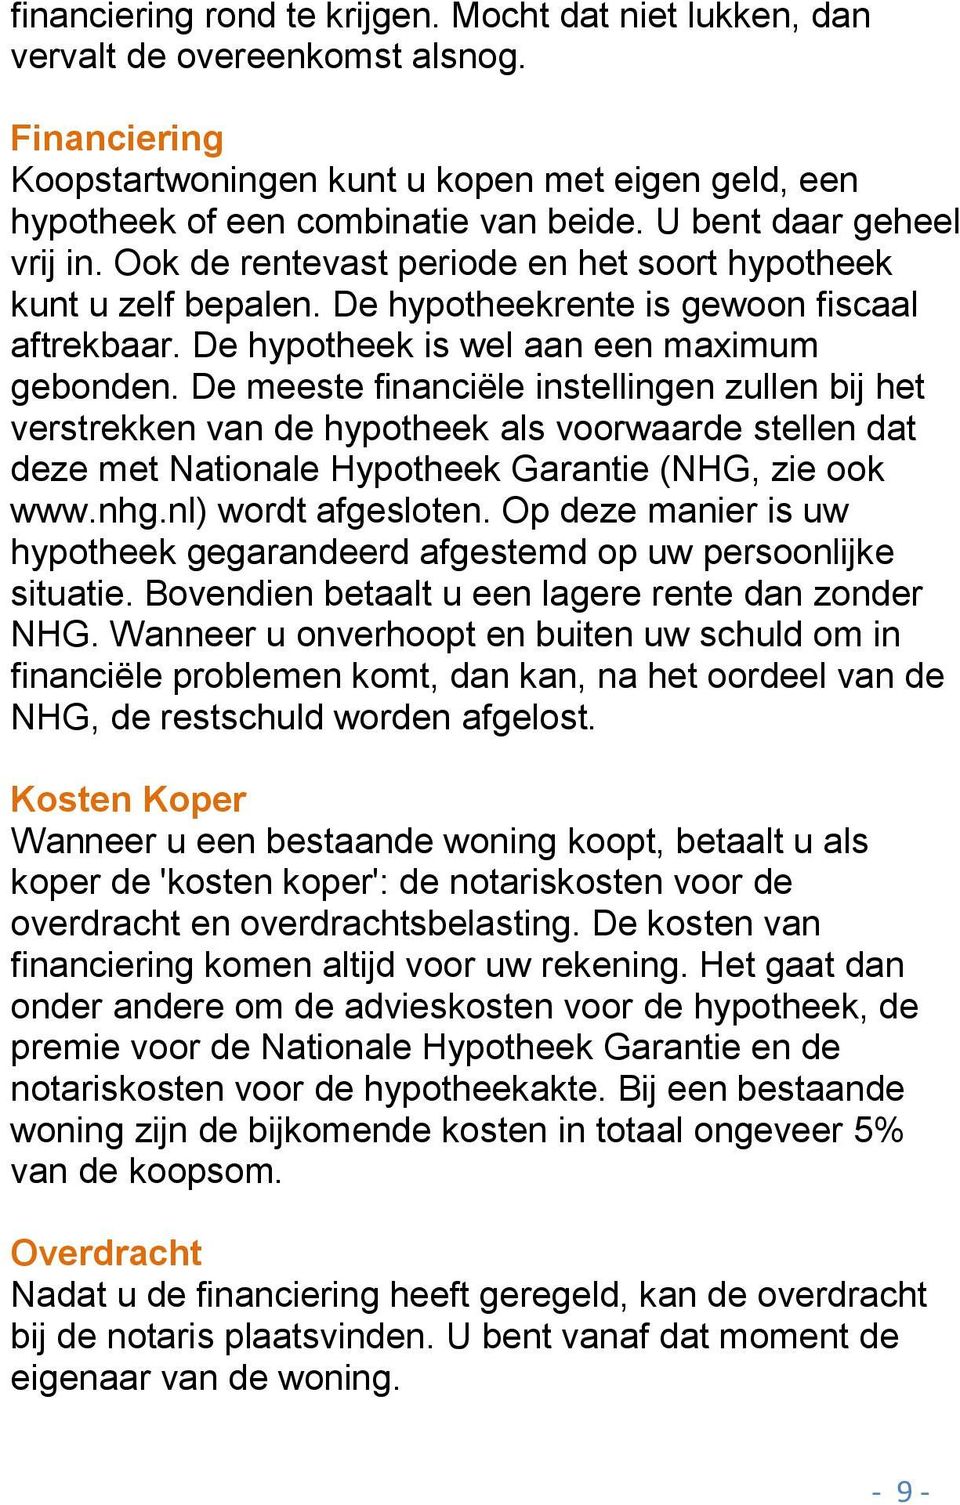 De meeste financiële instellingen zullen bij het verstrekken van de hypotheek als voorwaarde stellen dat deze met Nationale Hypotheek Garantie (NHG, zie ook www.nhg.nl) wordt afgesloten.